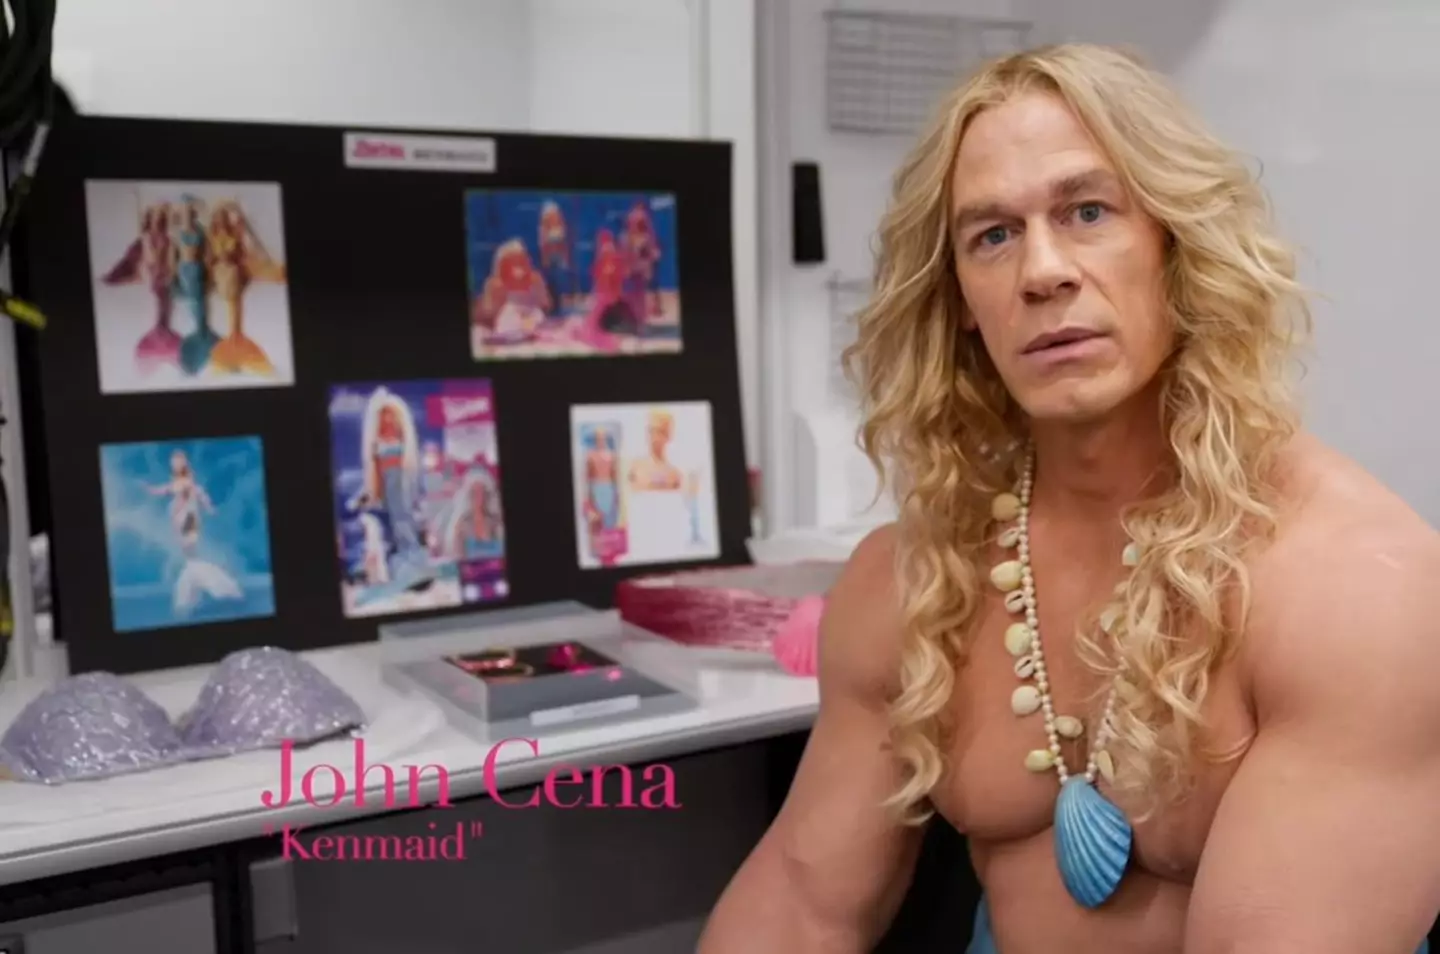 John Cena will appear in the Barbie film as a Merman.